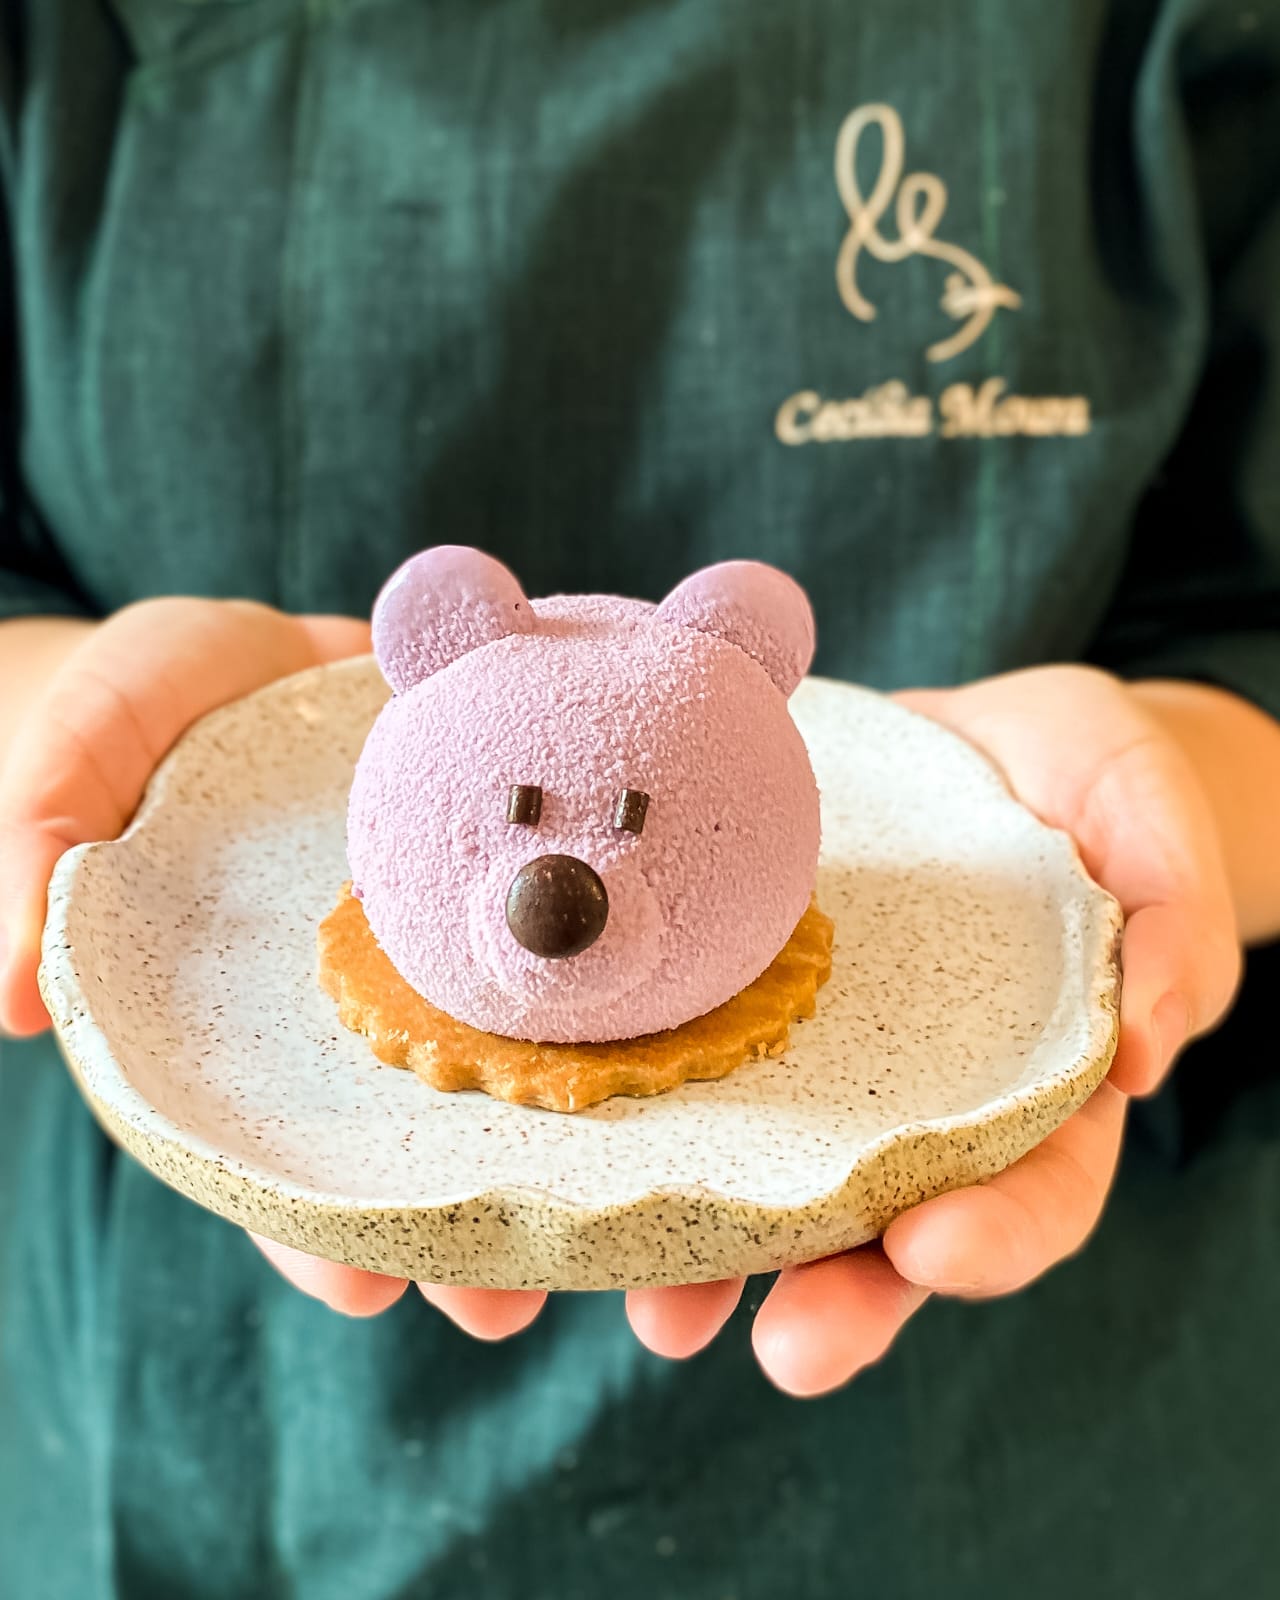 Confeitaria Le Lapin cria sobremesa especial para o Dia das Crianças